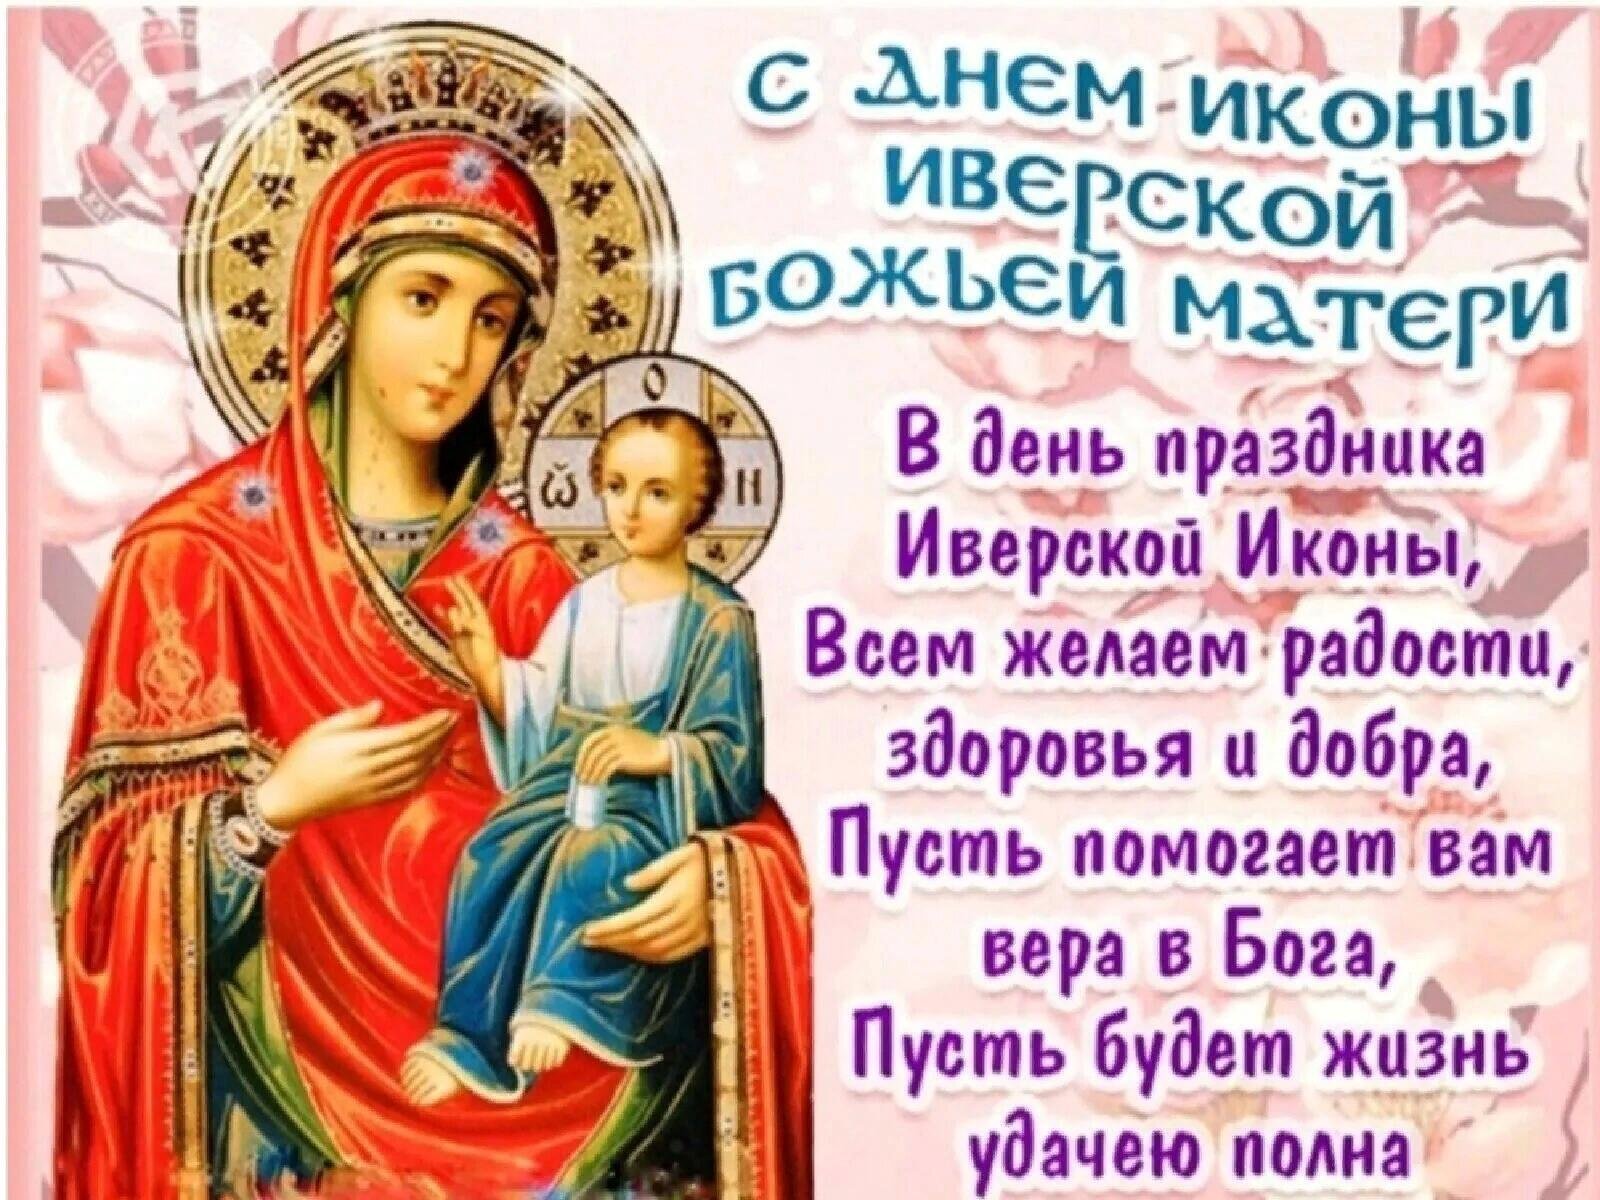 25 февраля день иверской божьей матери картинки